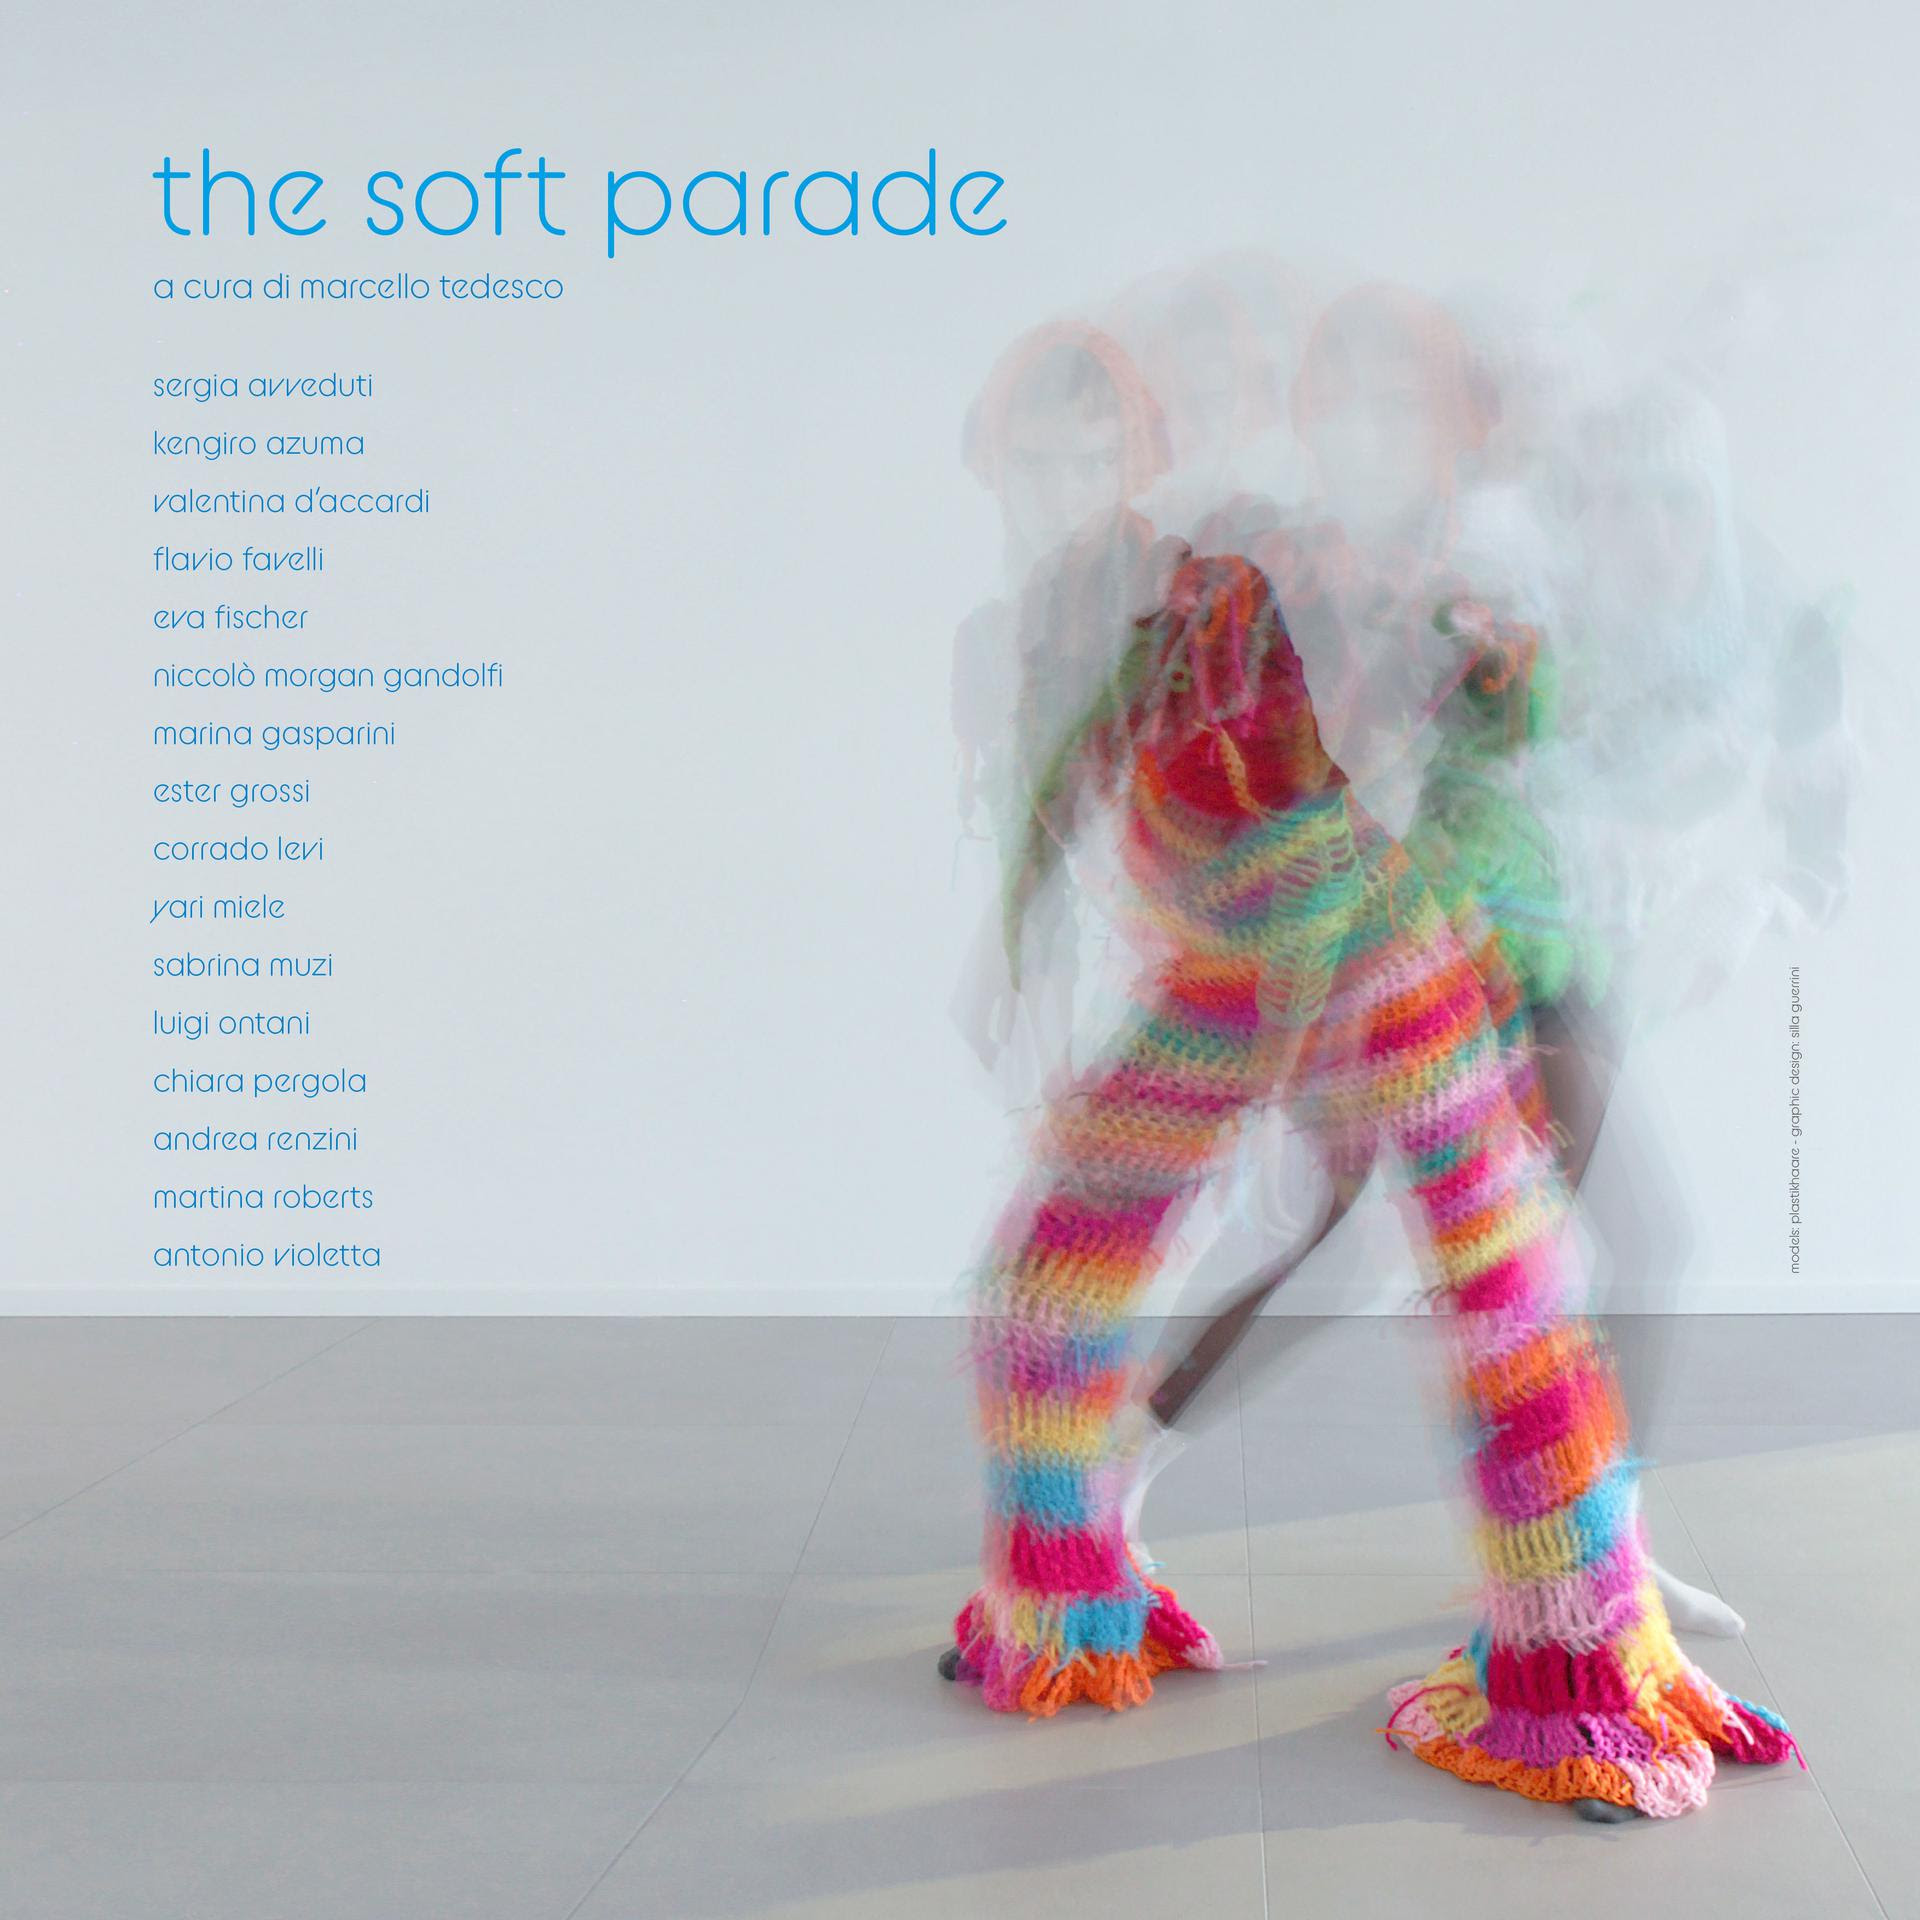 The soft parade